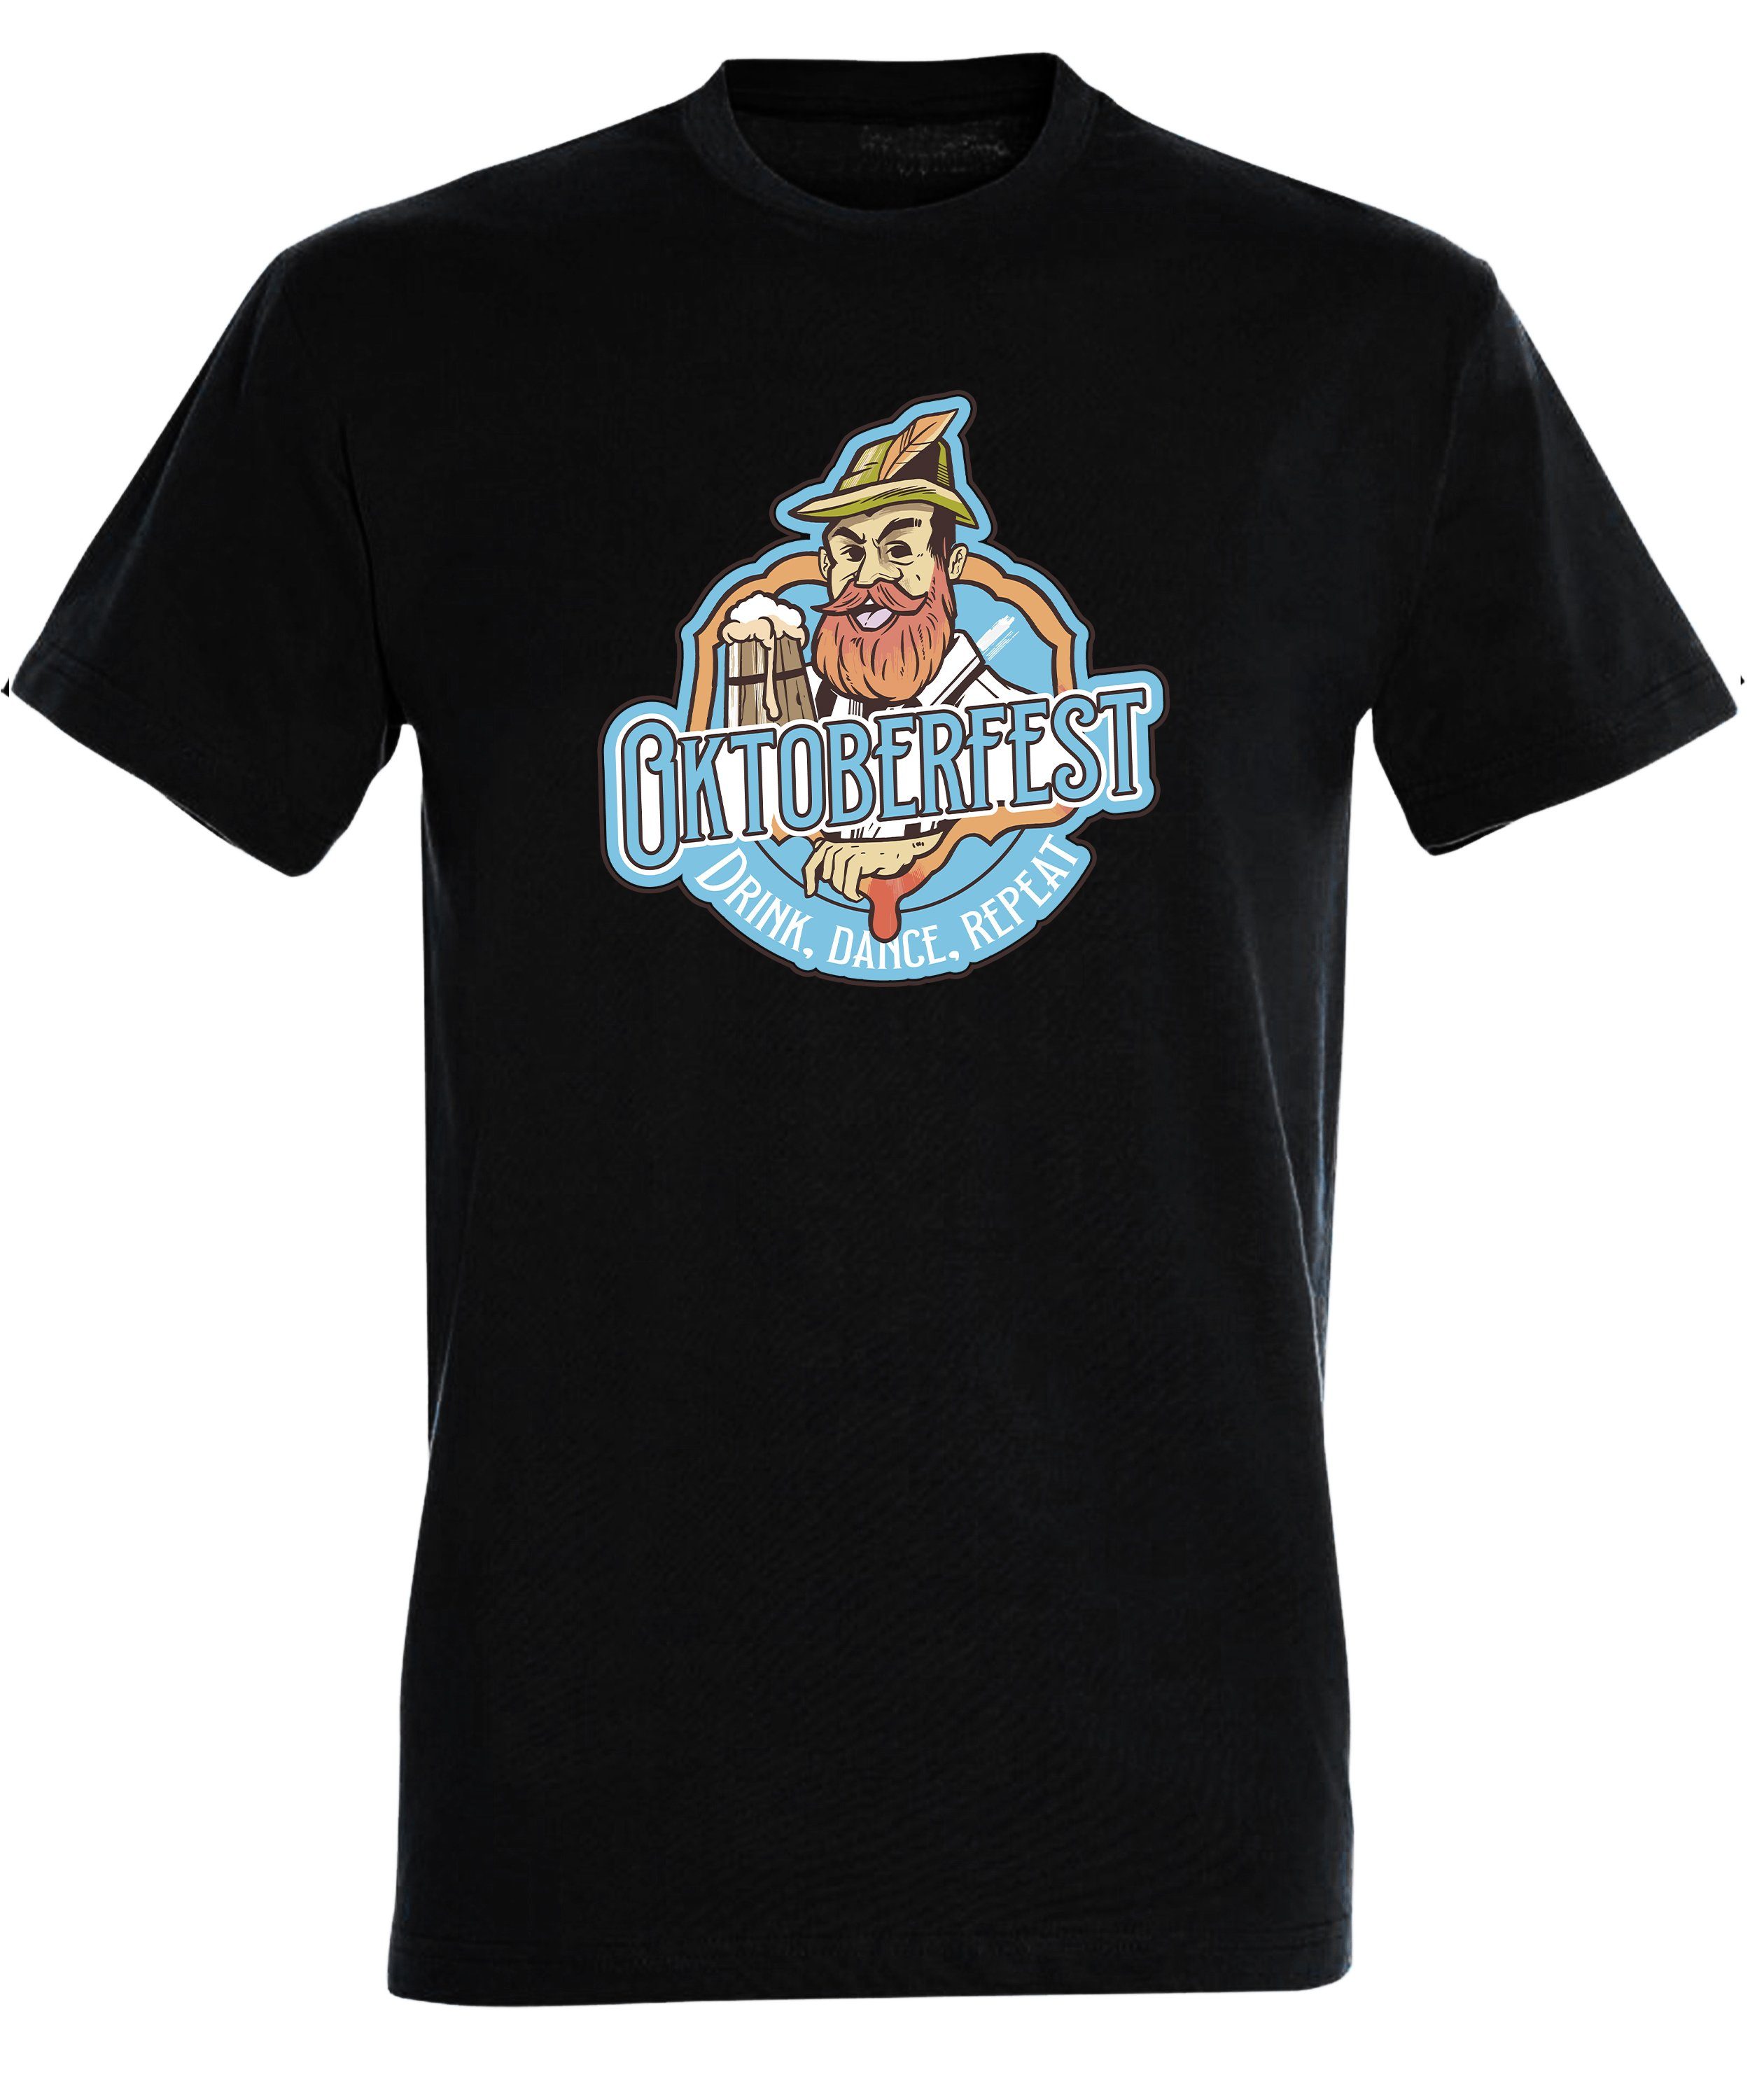 MyDesign24 T-Shirt Aufdruck Shirt schwarz Print mit Oktoberfest Baumwollshirt Fit, Fun Regular Herren T-Shirt Trinkshirt - i318